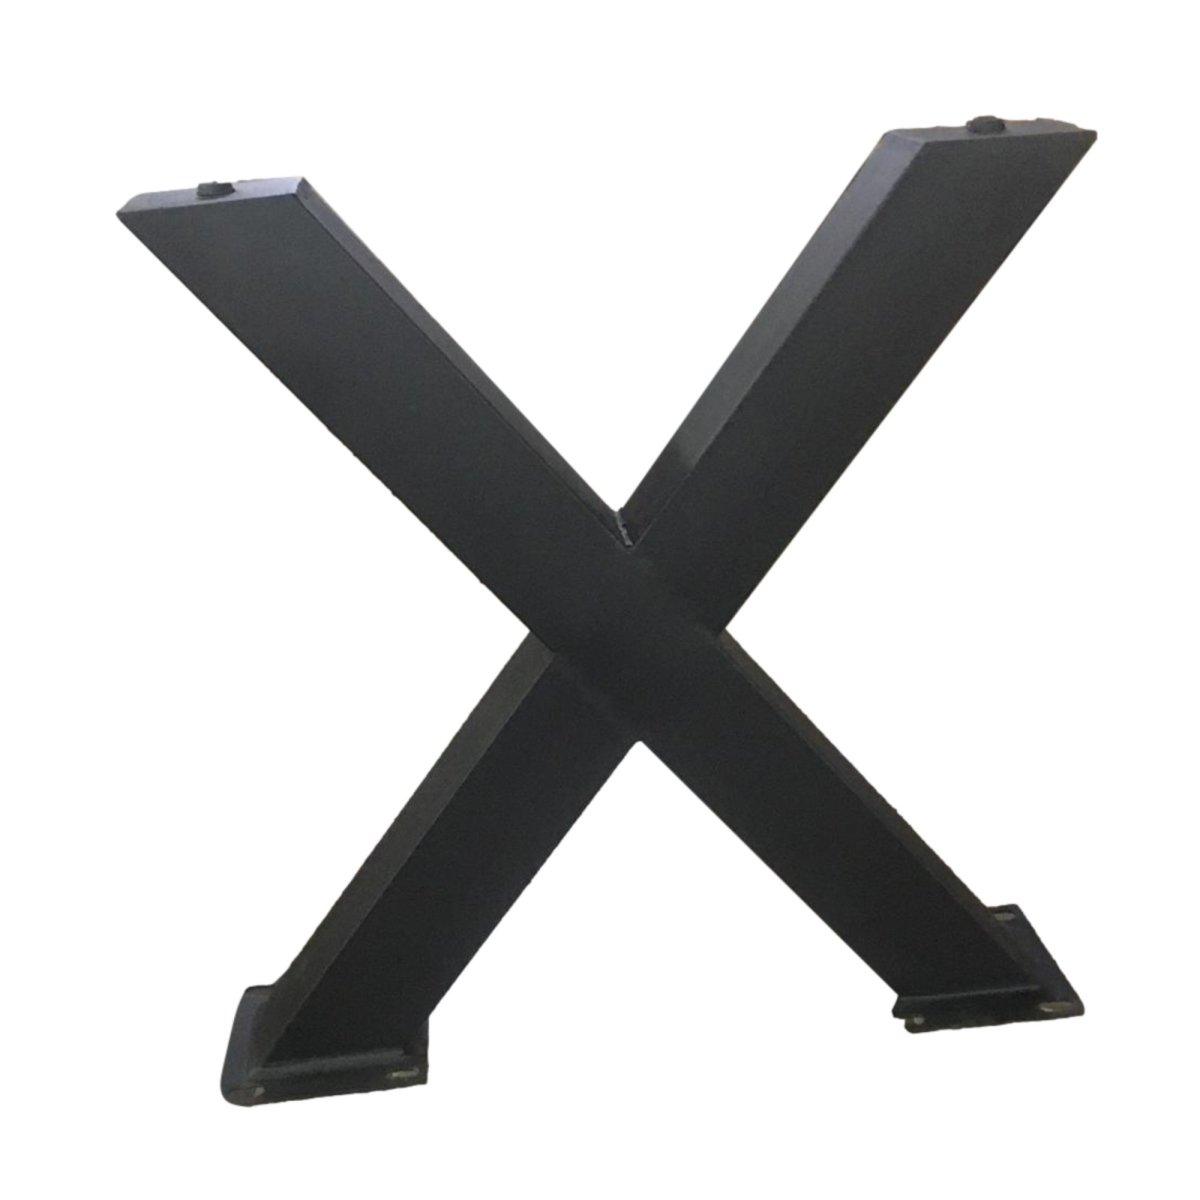 Pieds en X en métal, finition anthracite - Rustic Furniture Outlet